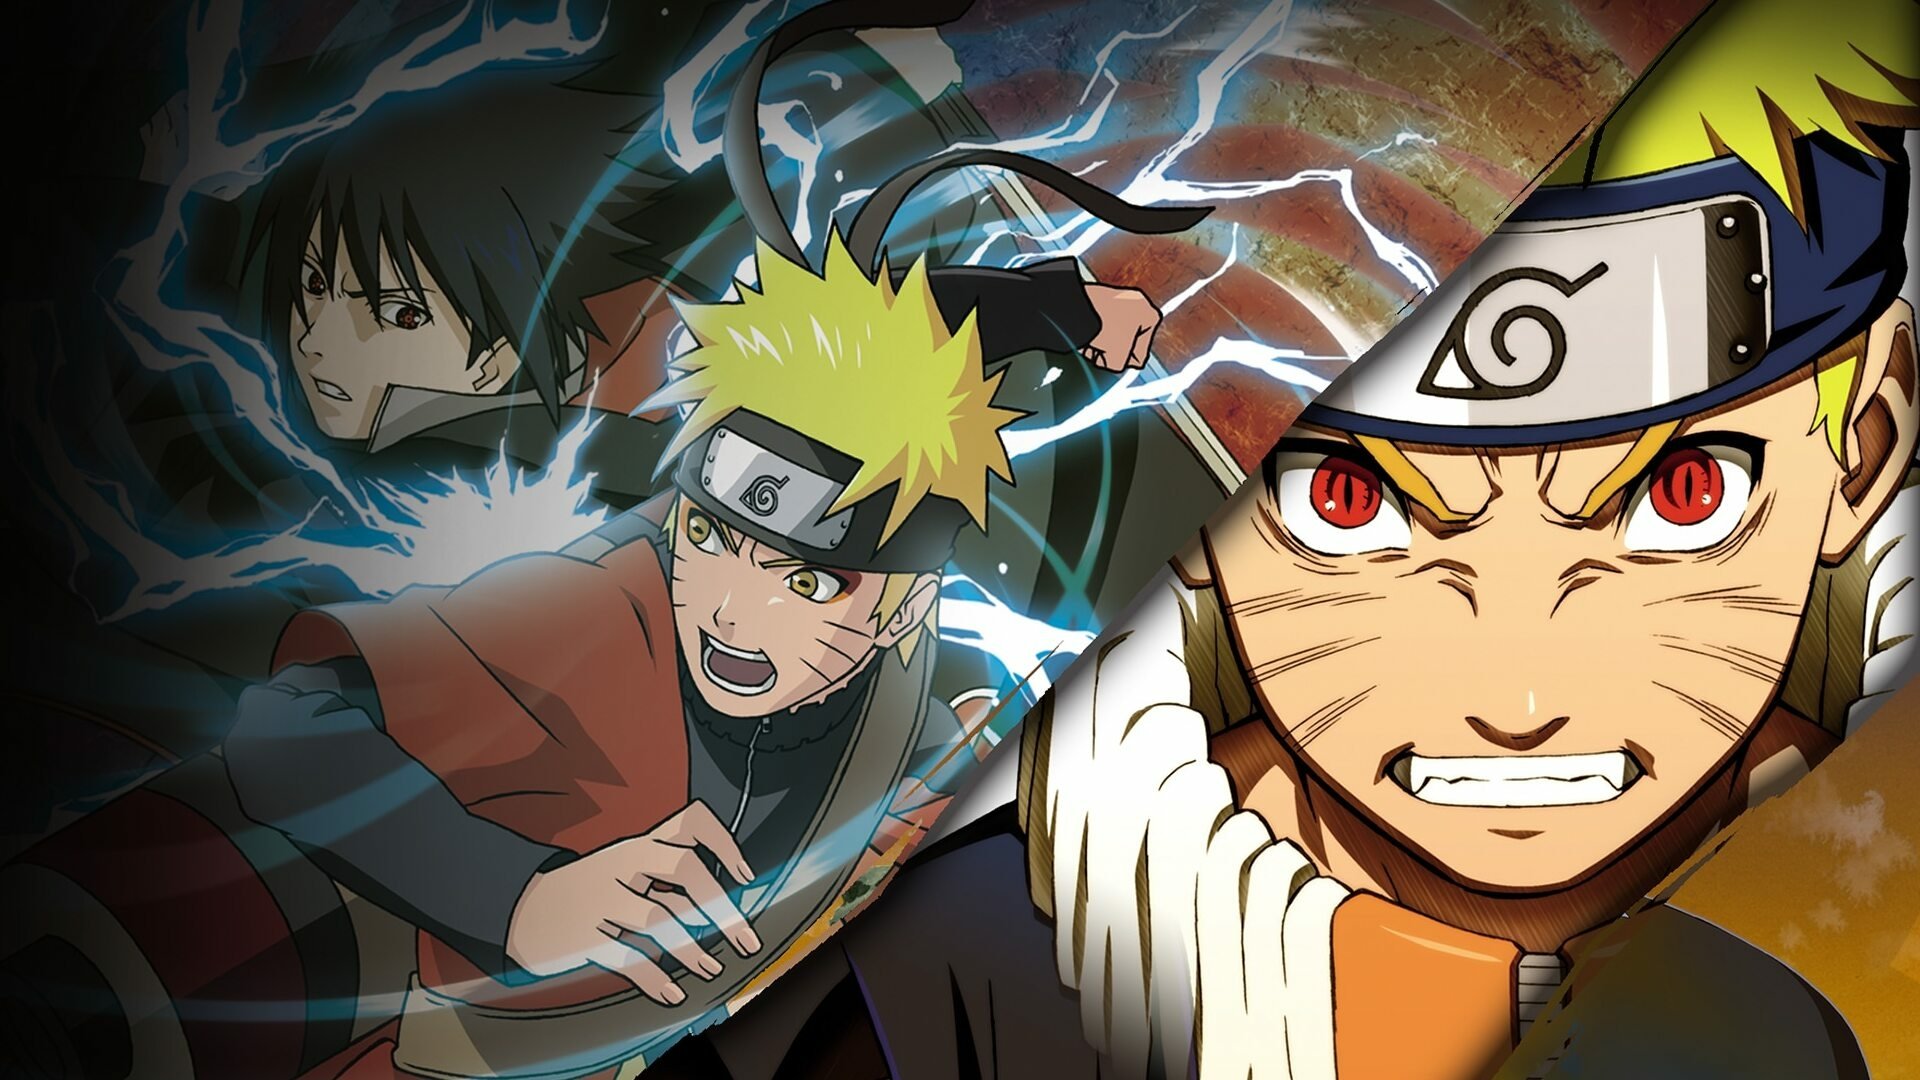 Naruto là một trong những bộ Anime nổi tiếng và được yêu thích nhất mọi thời đại. Lấy bối cảnh tại một thế giới phiêu lưu, tại đây cậu bé Naruto luôn cố gắng trở thành nhà ninja giỏi nhất làng. Bạn sẽ tiếp tục chứng kiến cuộc hành trình của Naruto với muôn vàn thử thách nguy hiểm.